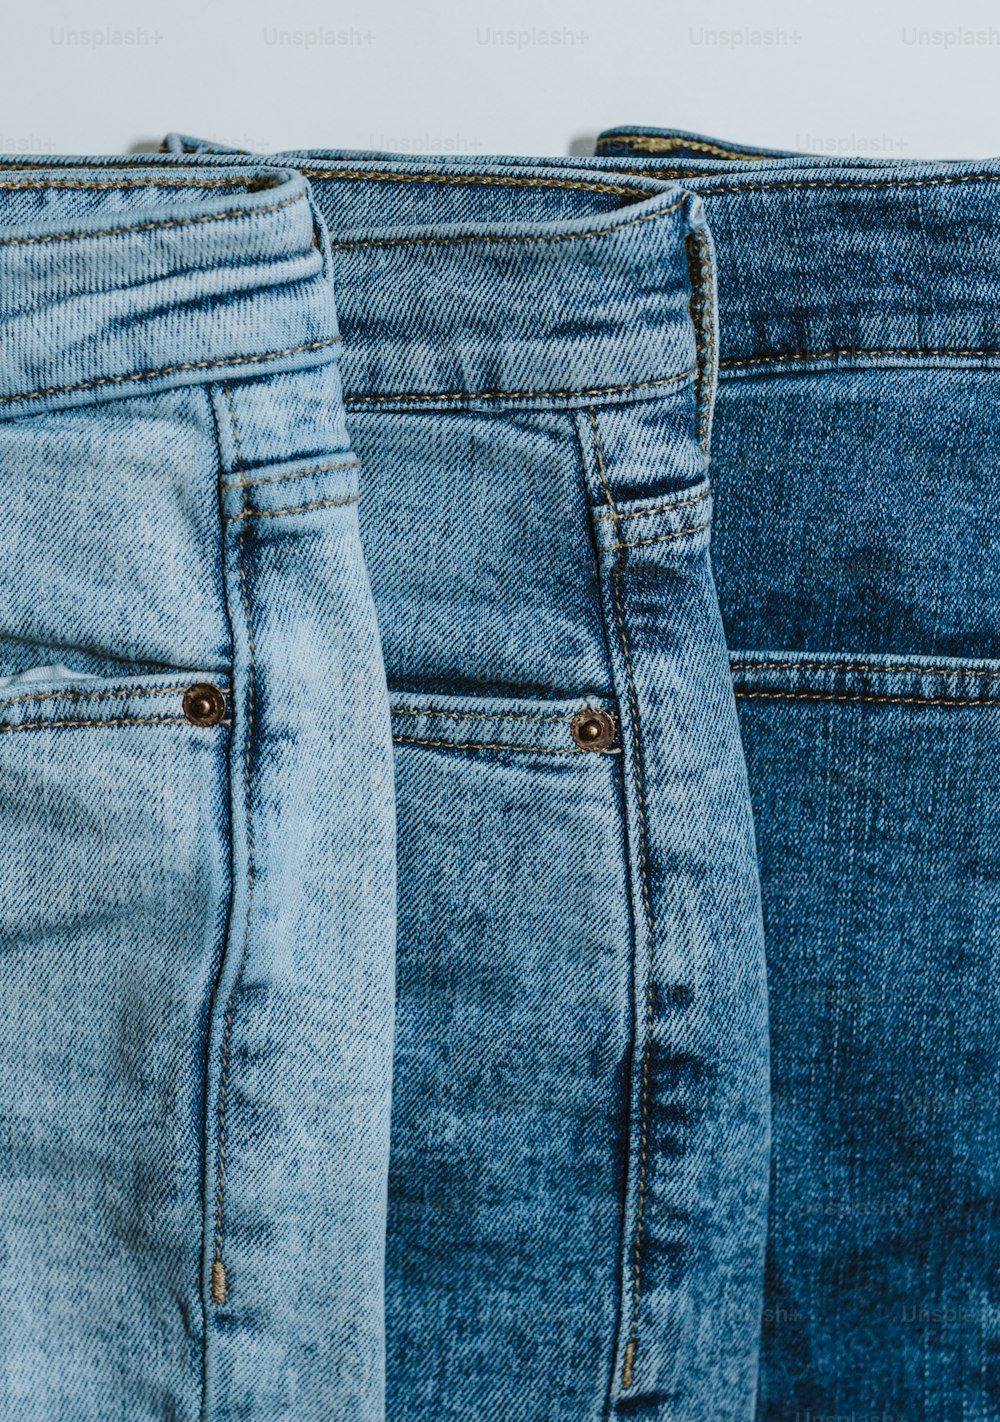 Tre paia di jeans sono allineati in fila